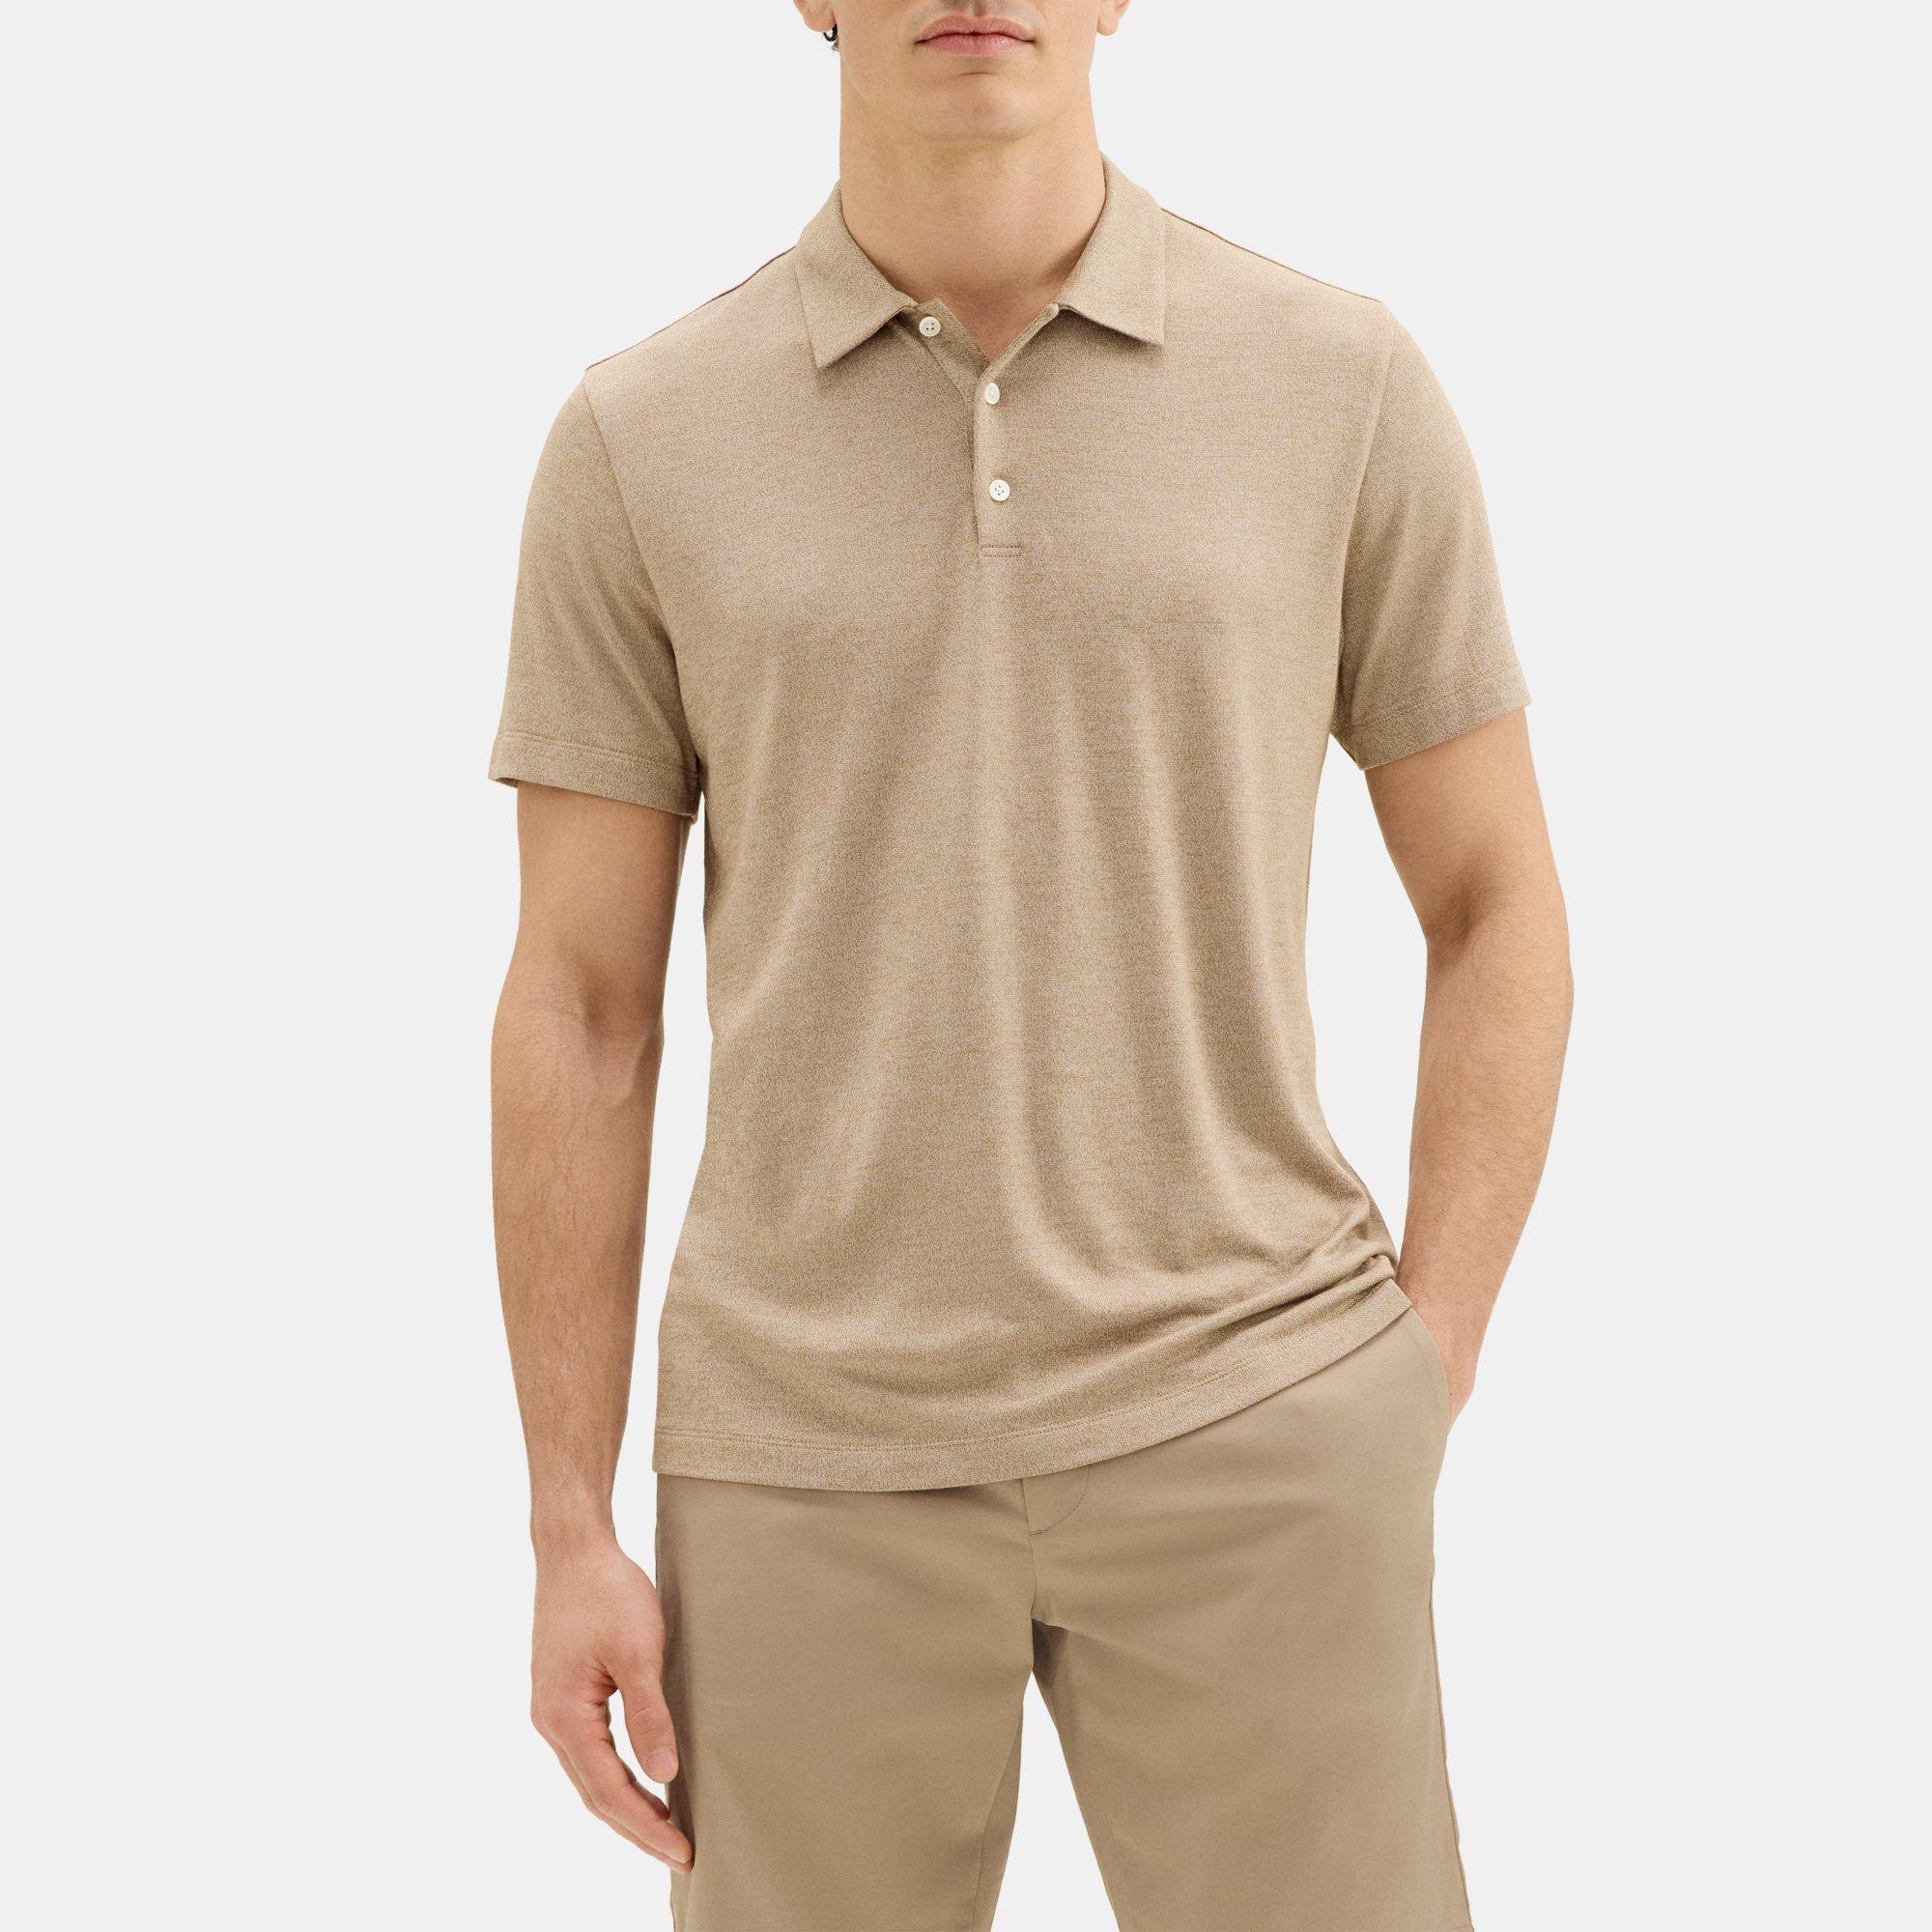 띠어리 Theory Polo Shirt in Modal Blend Jersey,CARIBOU/WHITE